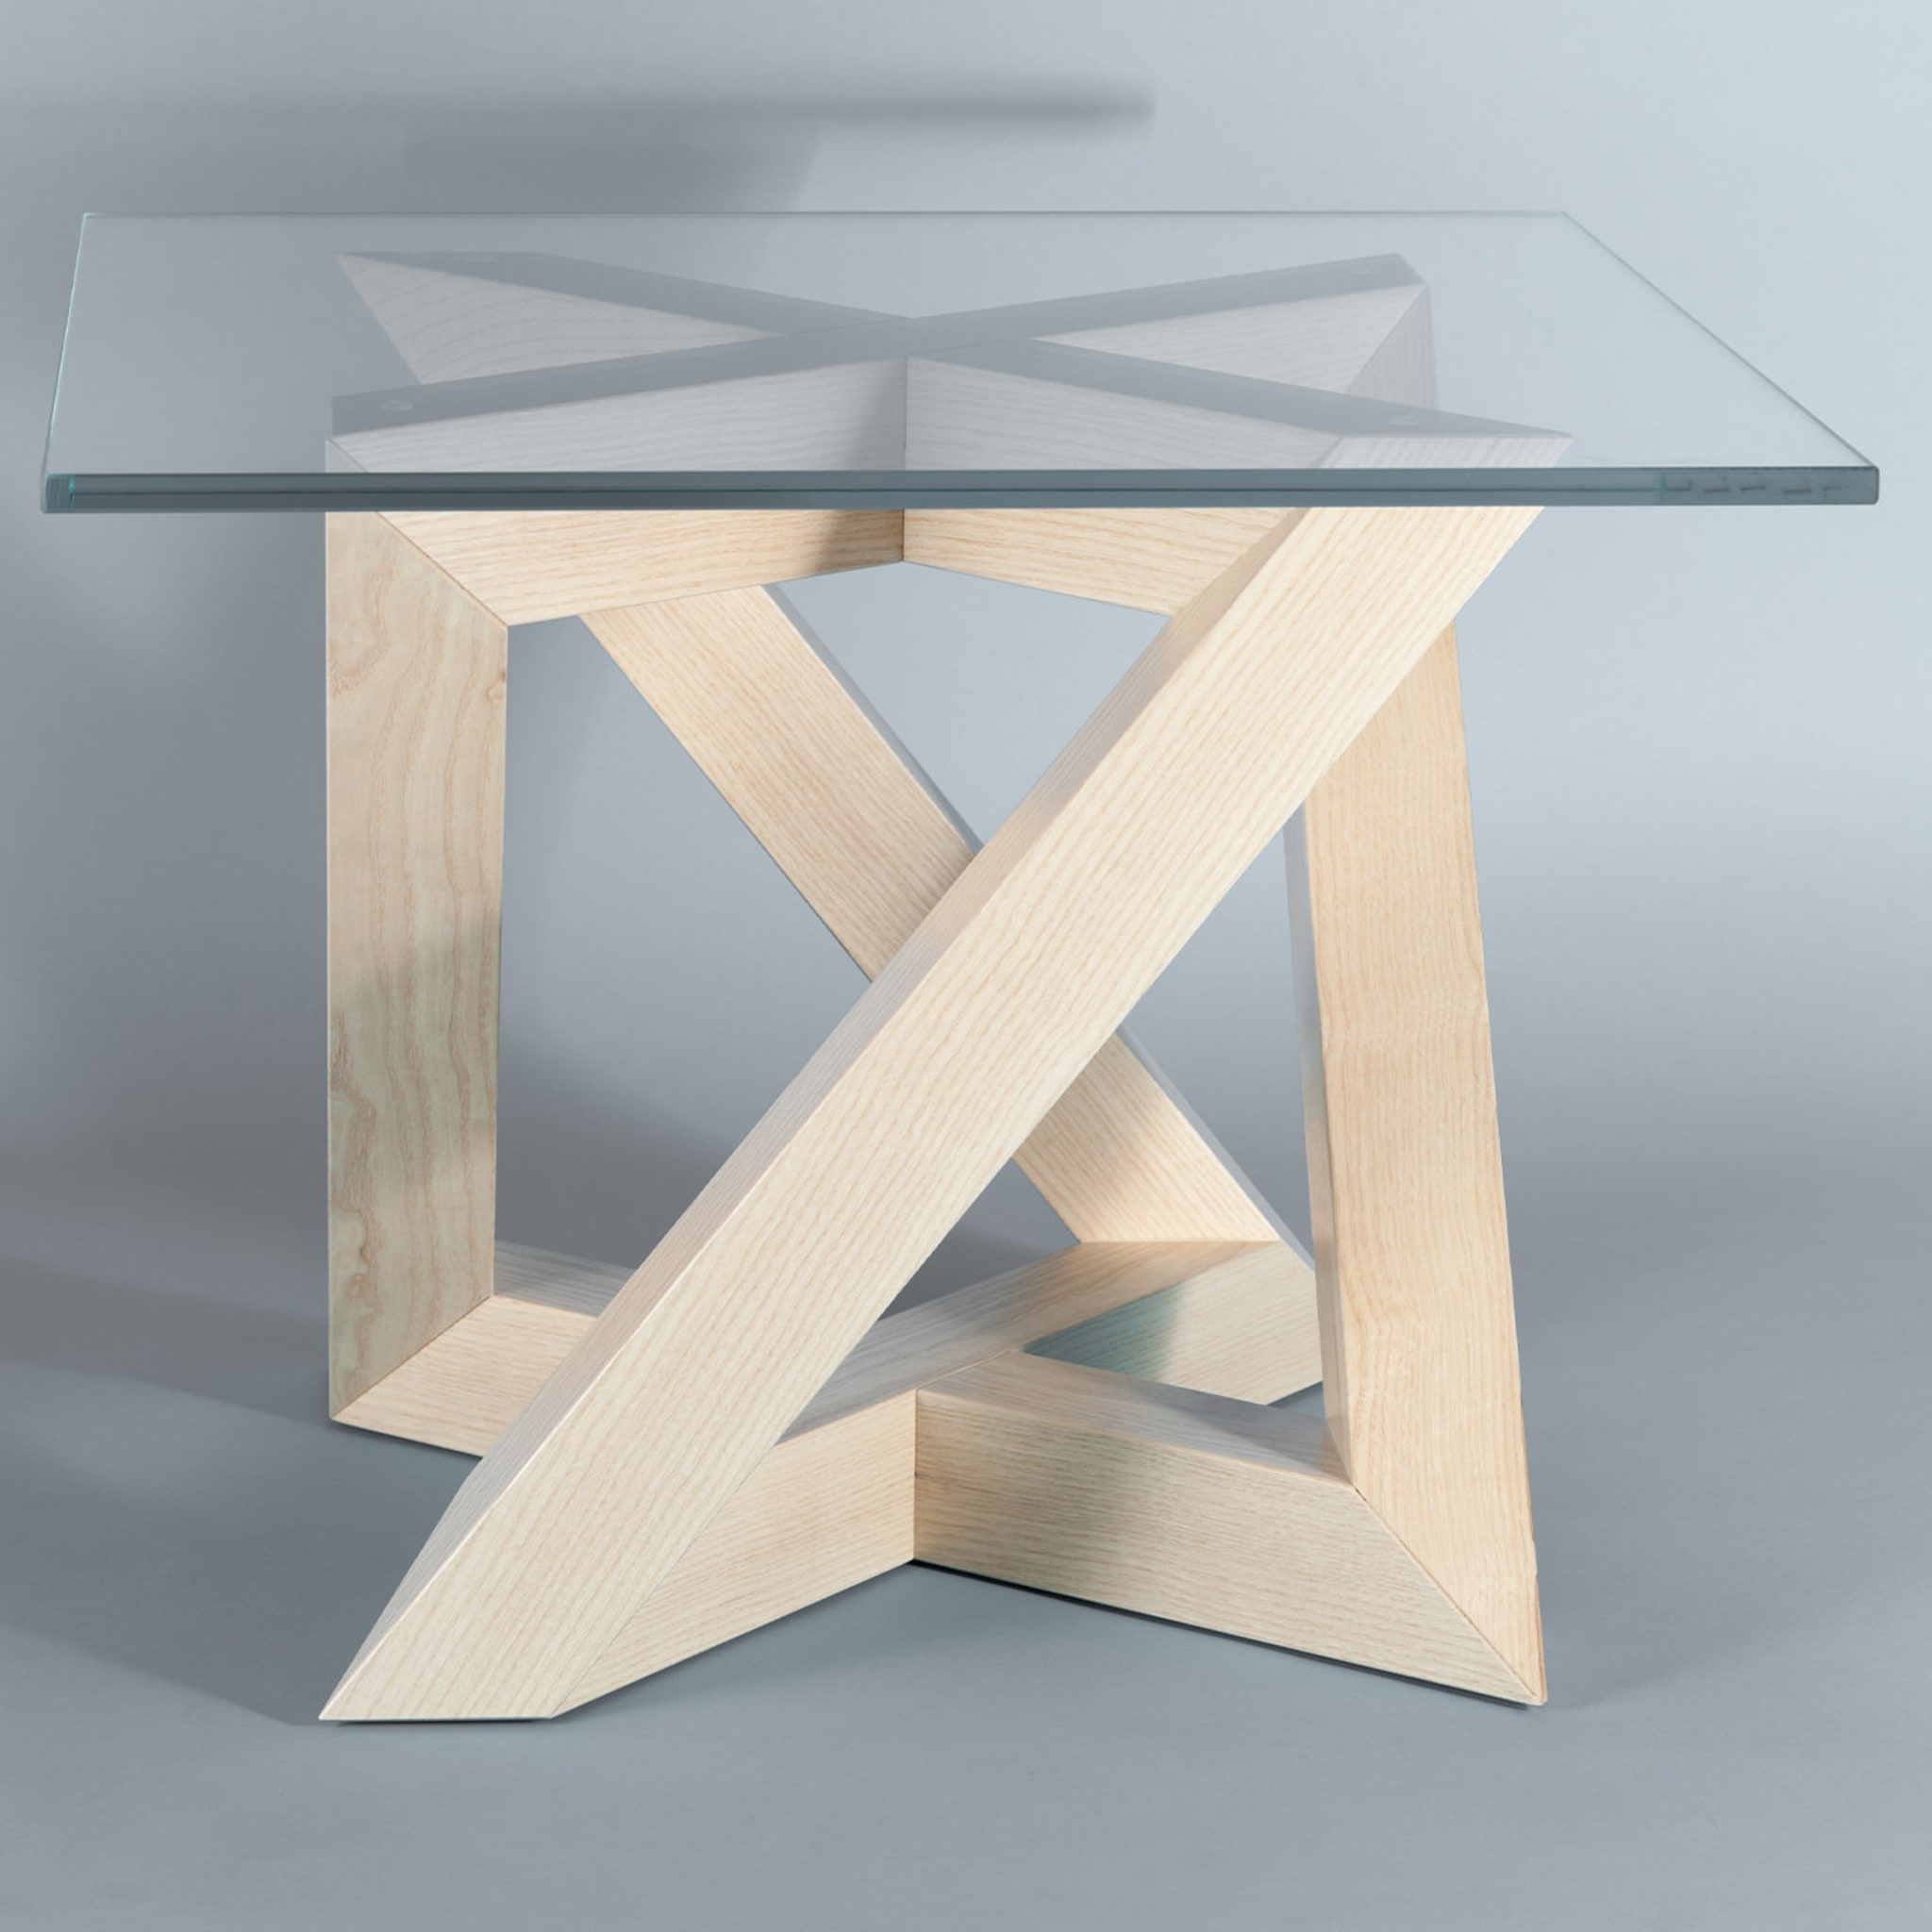 RK Coffee Table #2 by Antonio Saporito - Alternative view 1